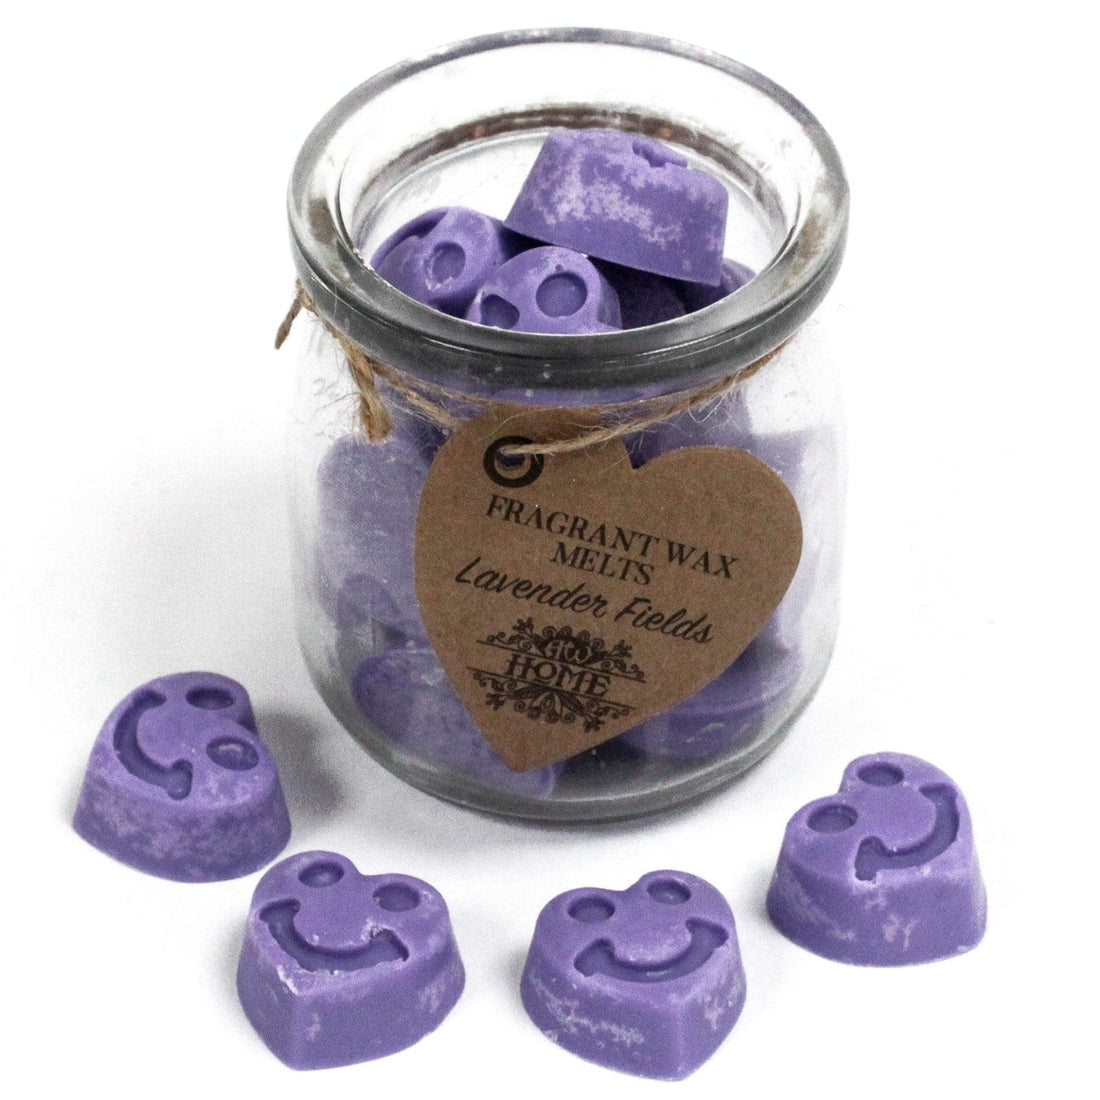 Soywax Melts Jar - Lavender Fields - best price from Maltashopper.com SWMJ-01